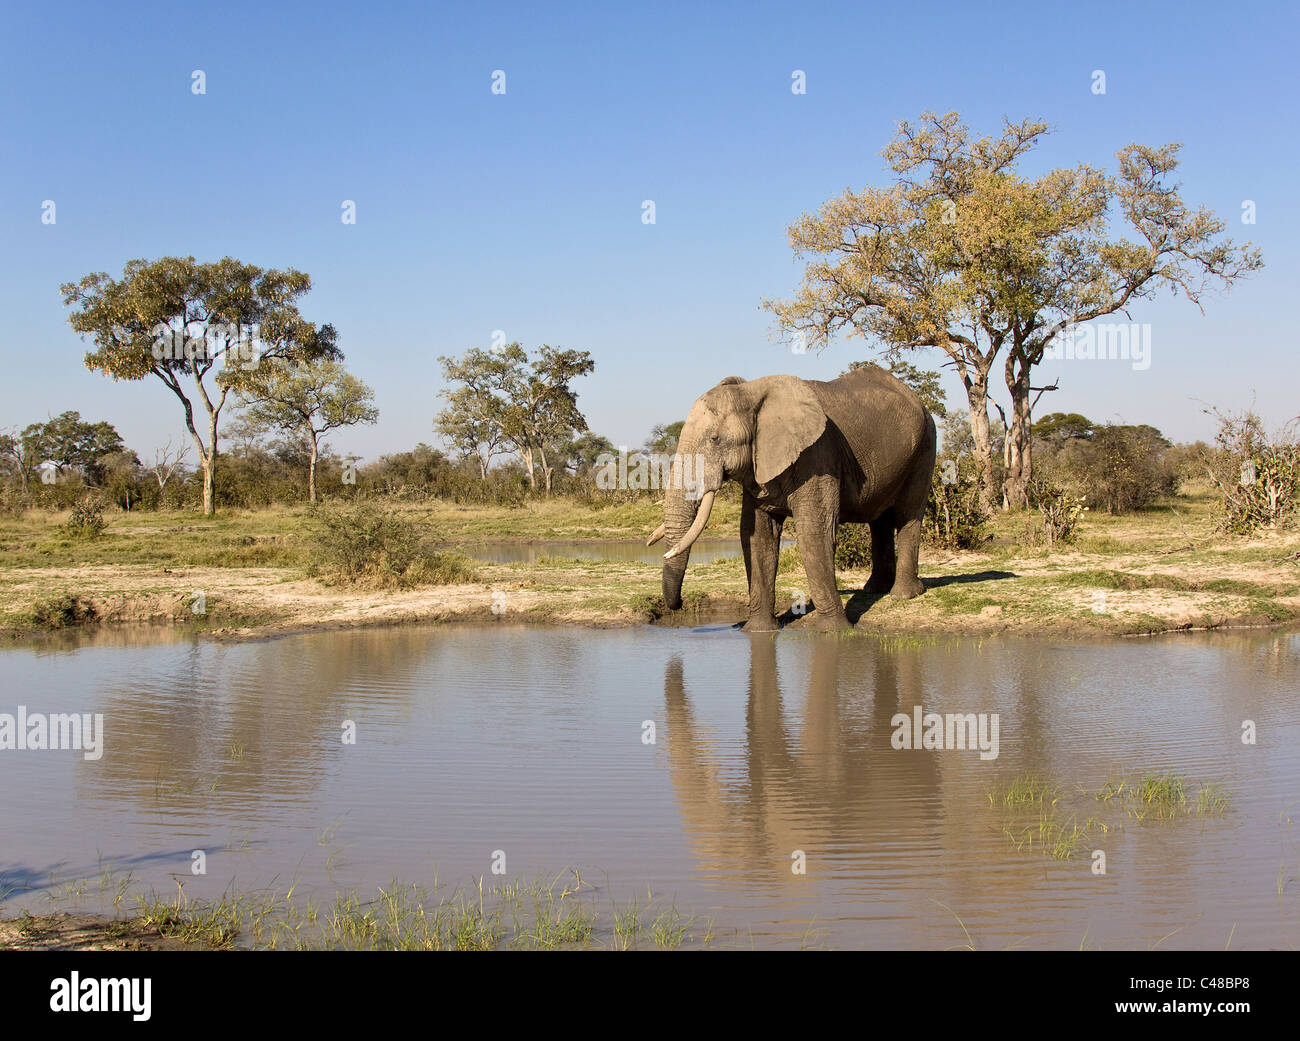 Afrikanischer Elefant (Loxodonta africana) suis natürlichen Wasserloch, Savuti, Botswana, Afrika Banque D'Images